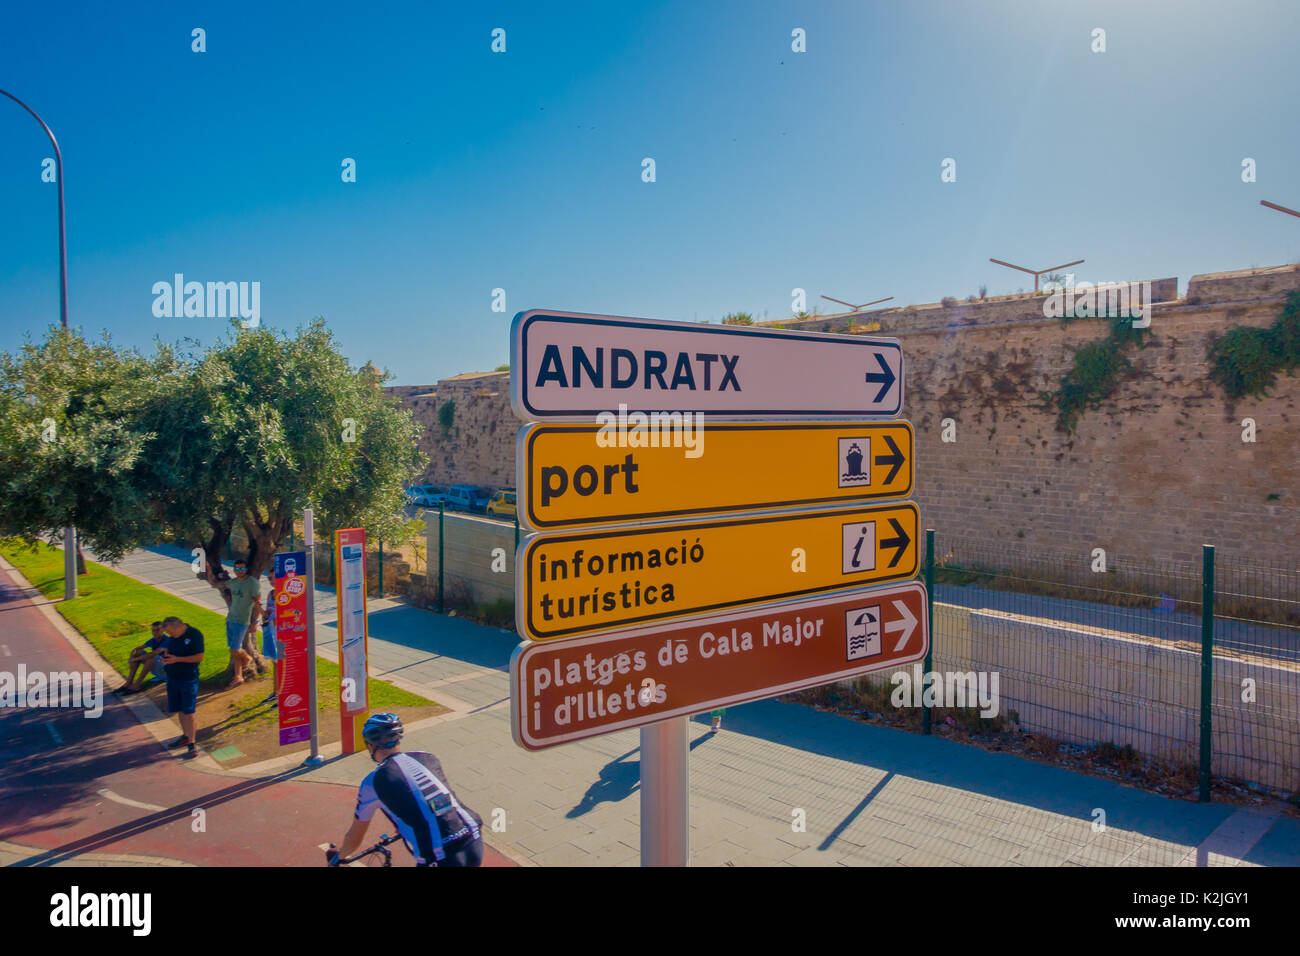 PALMA DE MALLORCA, SPANIEN - 18. AUGUST 2017: Informative Zeichen mit einigen Menschen Radfahren und Wandern rund um die Stadt von Palma de Mallorca in einem schönen blauen sonnigen Tag in Palma de Mallorca, Spanien Stockfoto